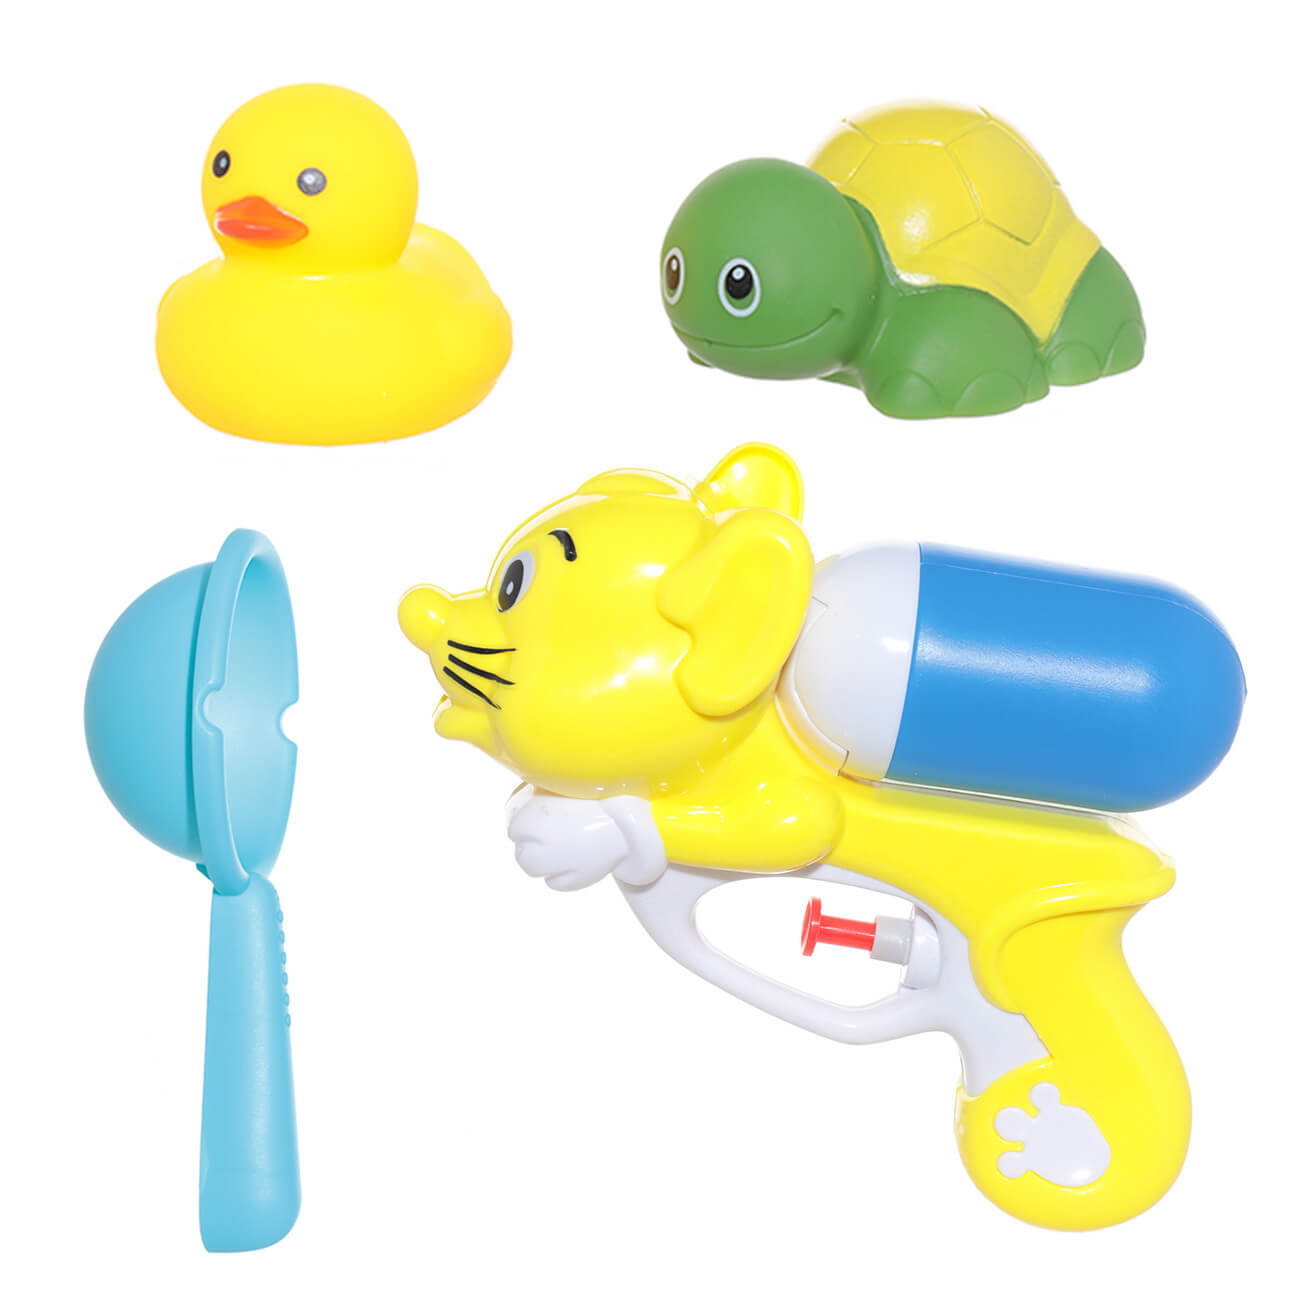 Набор игрушек для купания, 4 пр, водный пистолет/игрушки, резина/пластик, желтый, Duck yellow изображение № 1